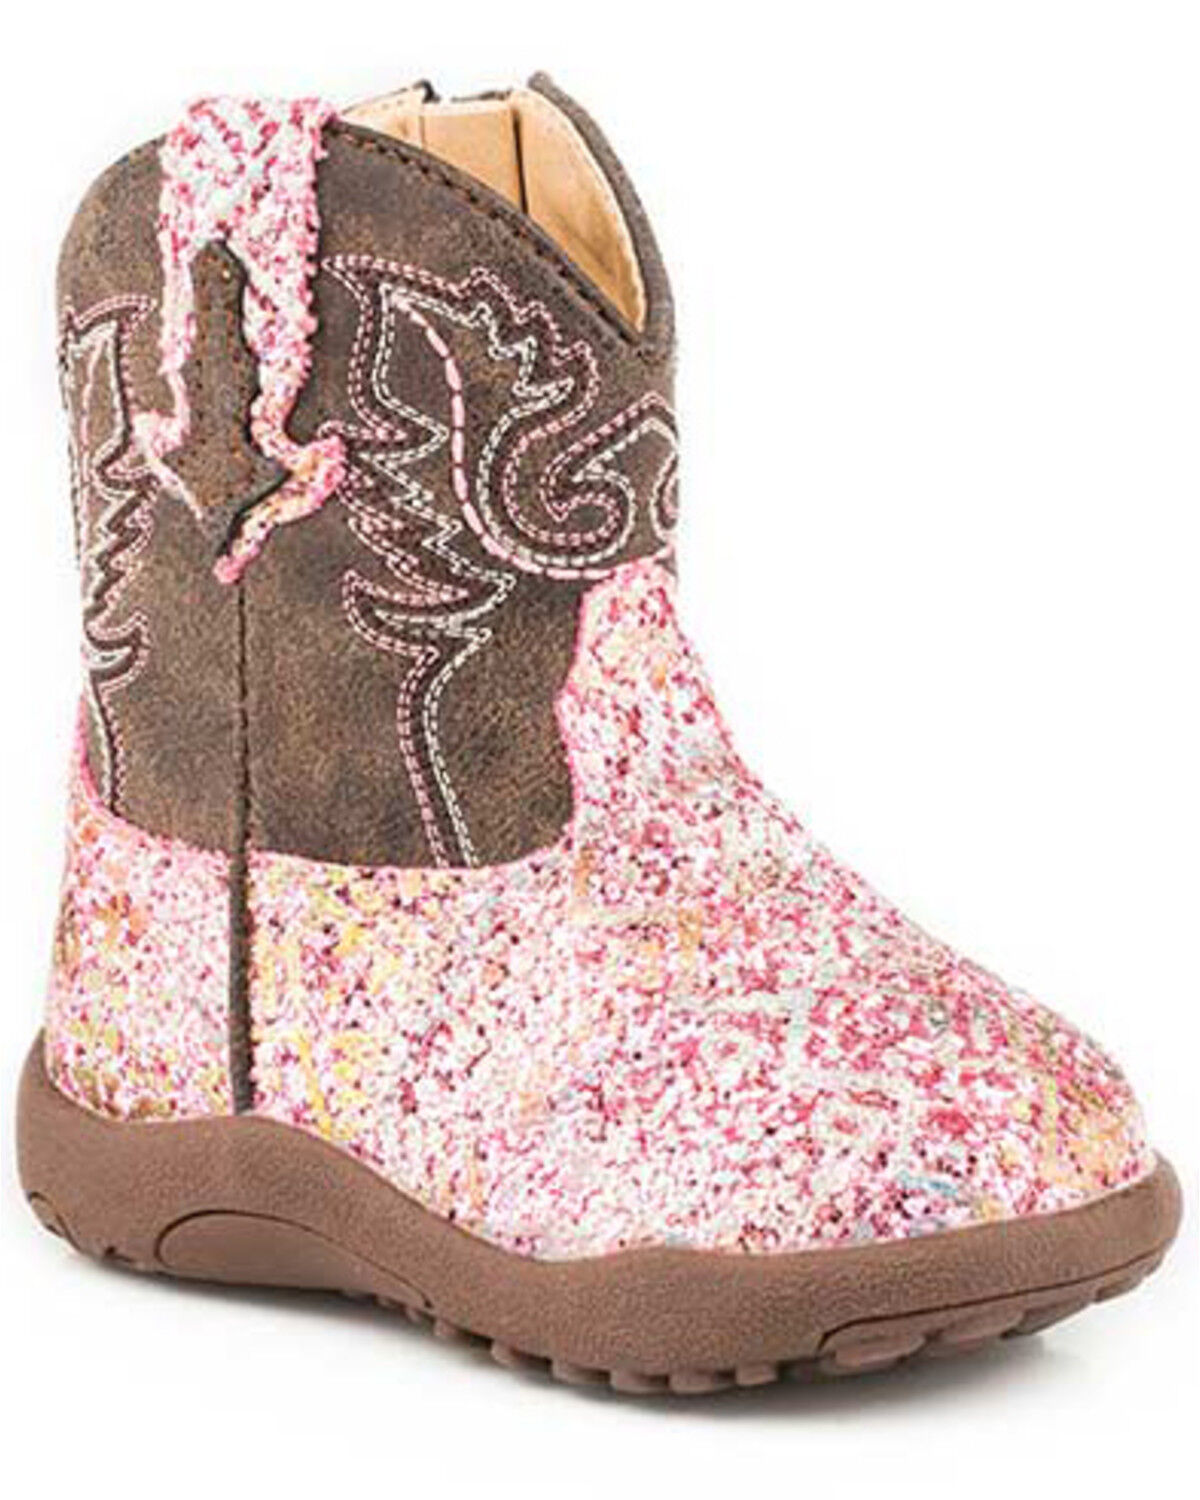 Schoenen Meisjesschoenen Laarzen Infant baby bright pink bandana western cowboy boots 